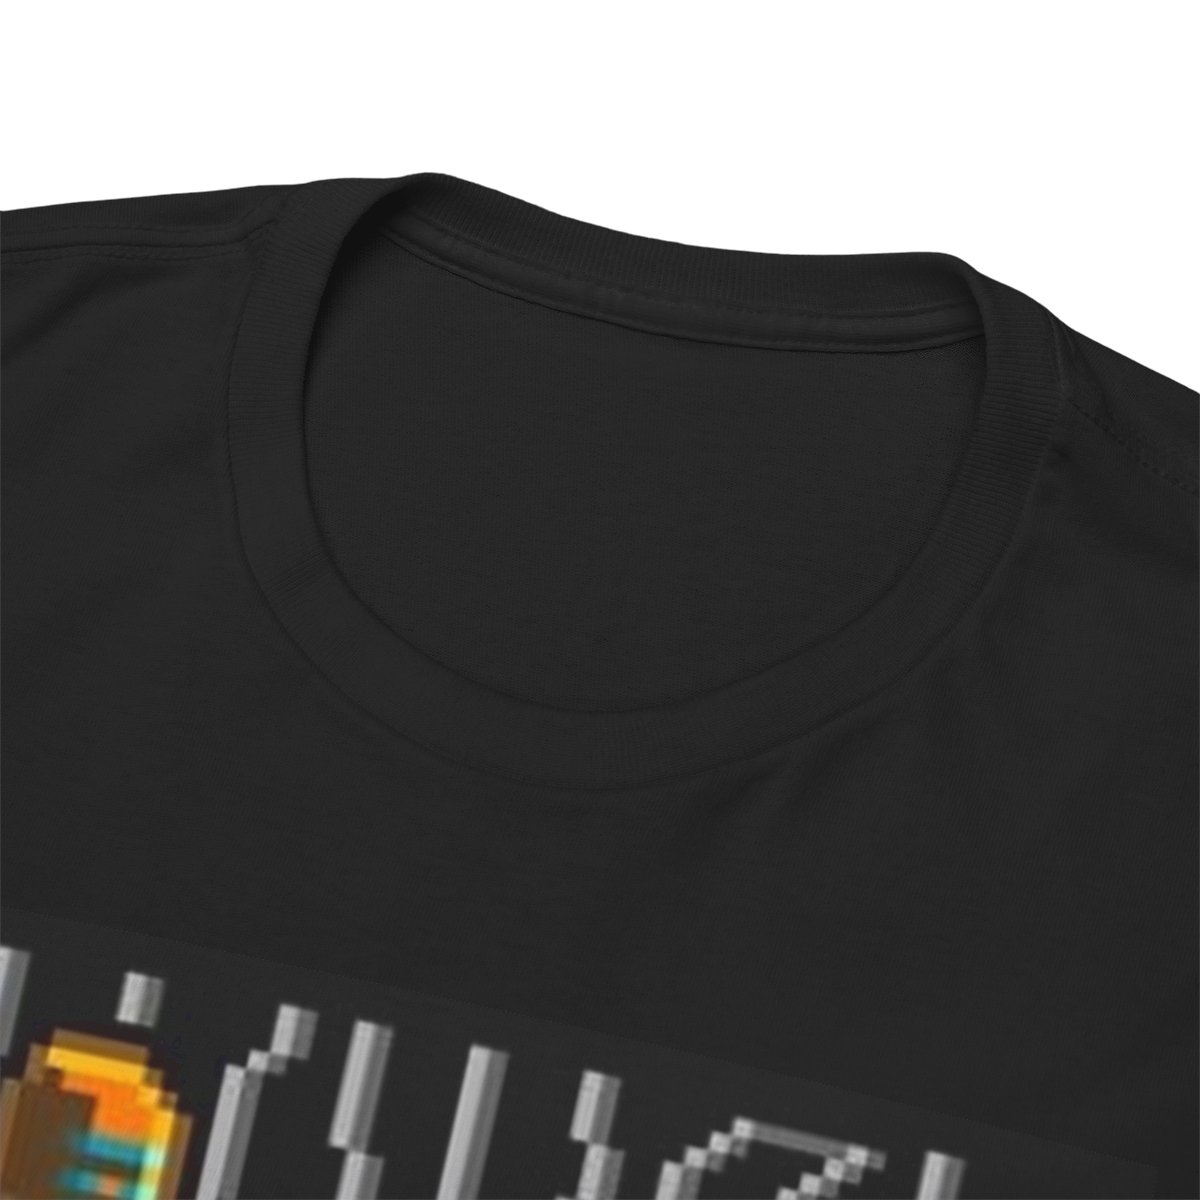 Dark Fringe Radio "NES Inspired" T-Shirt product thumbnail image